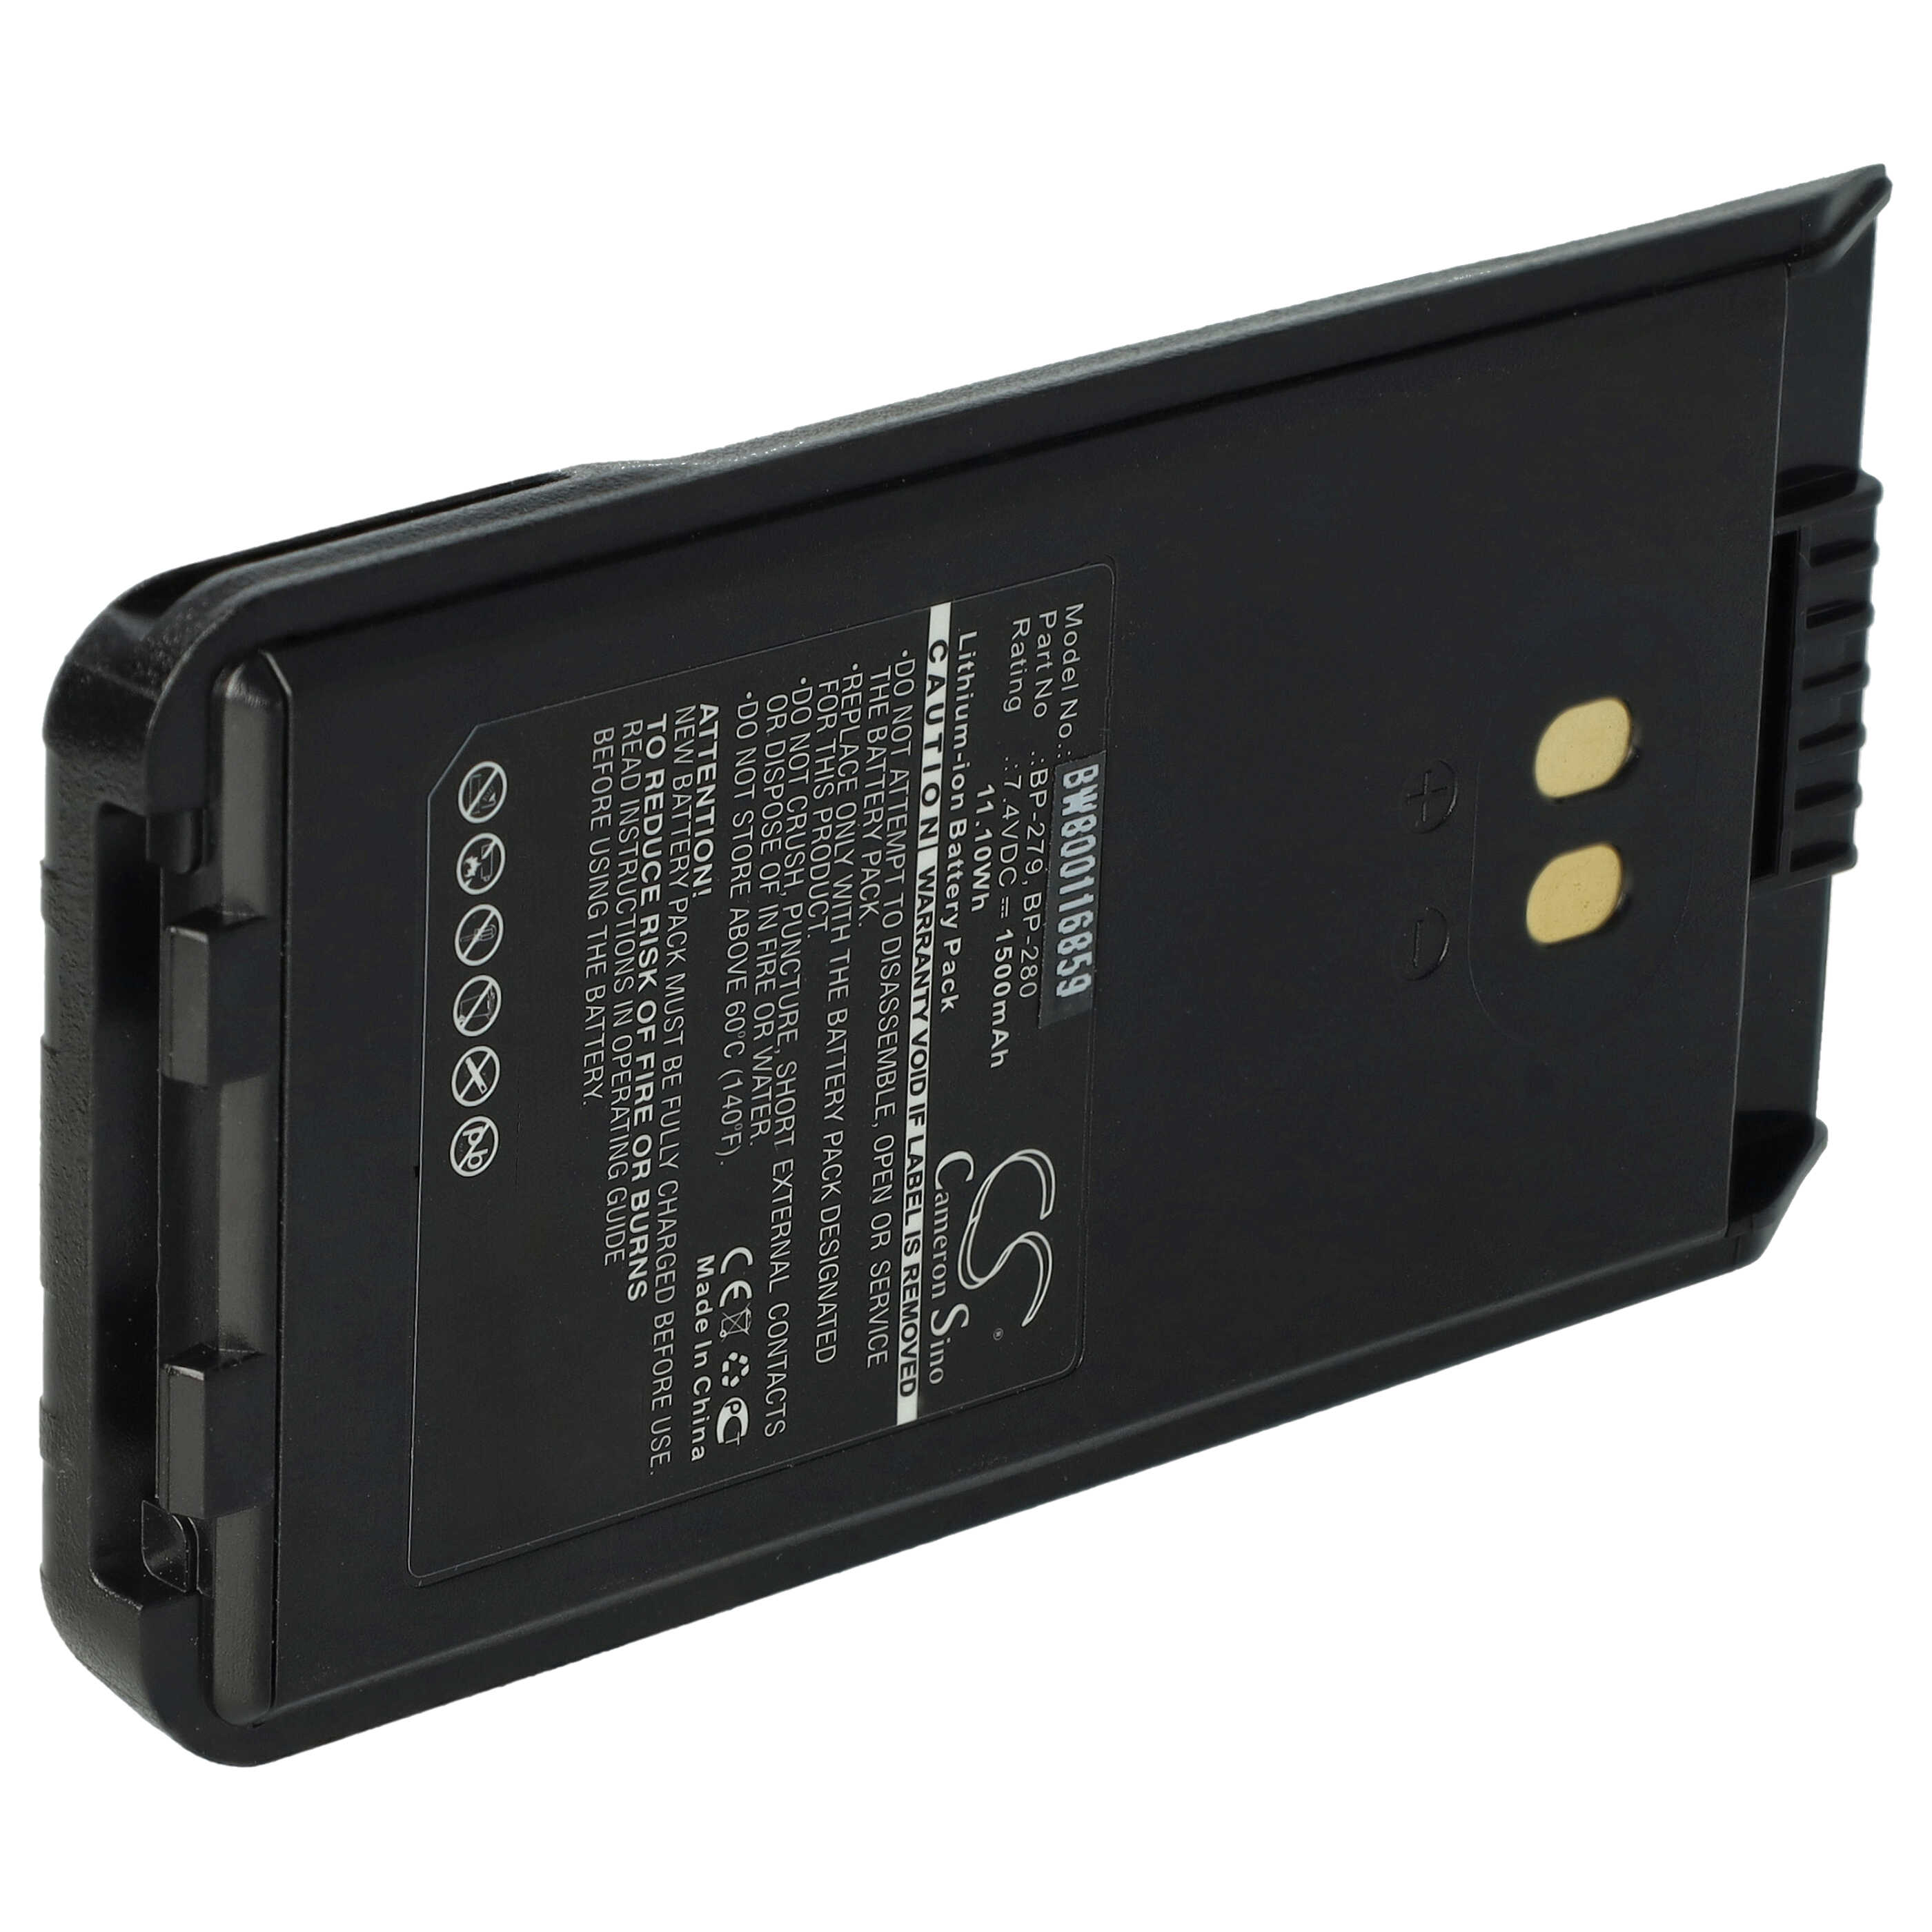 Akumulator do radiotelefonu zamiennik Icom BP-279, BP-280, BP-280LI - 1500 mAh 7,4 V Li-Ion + klips na pasek